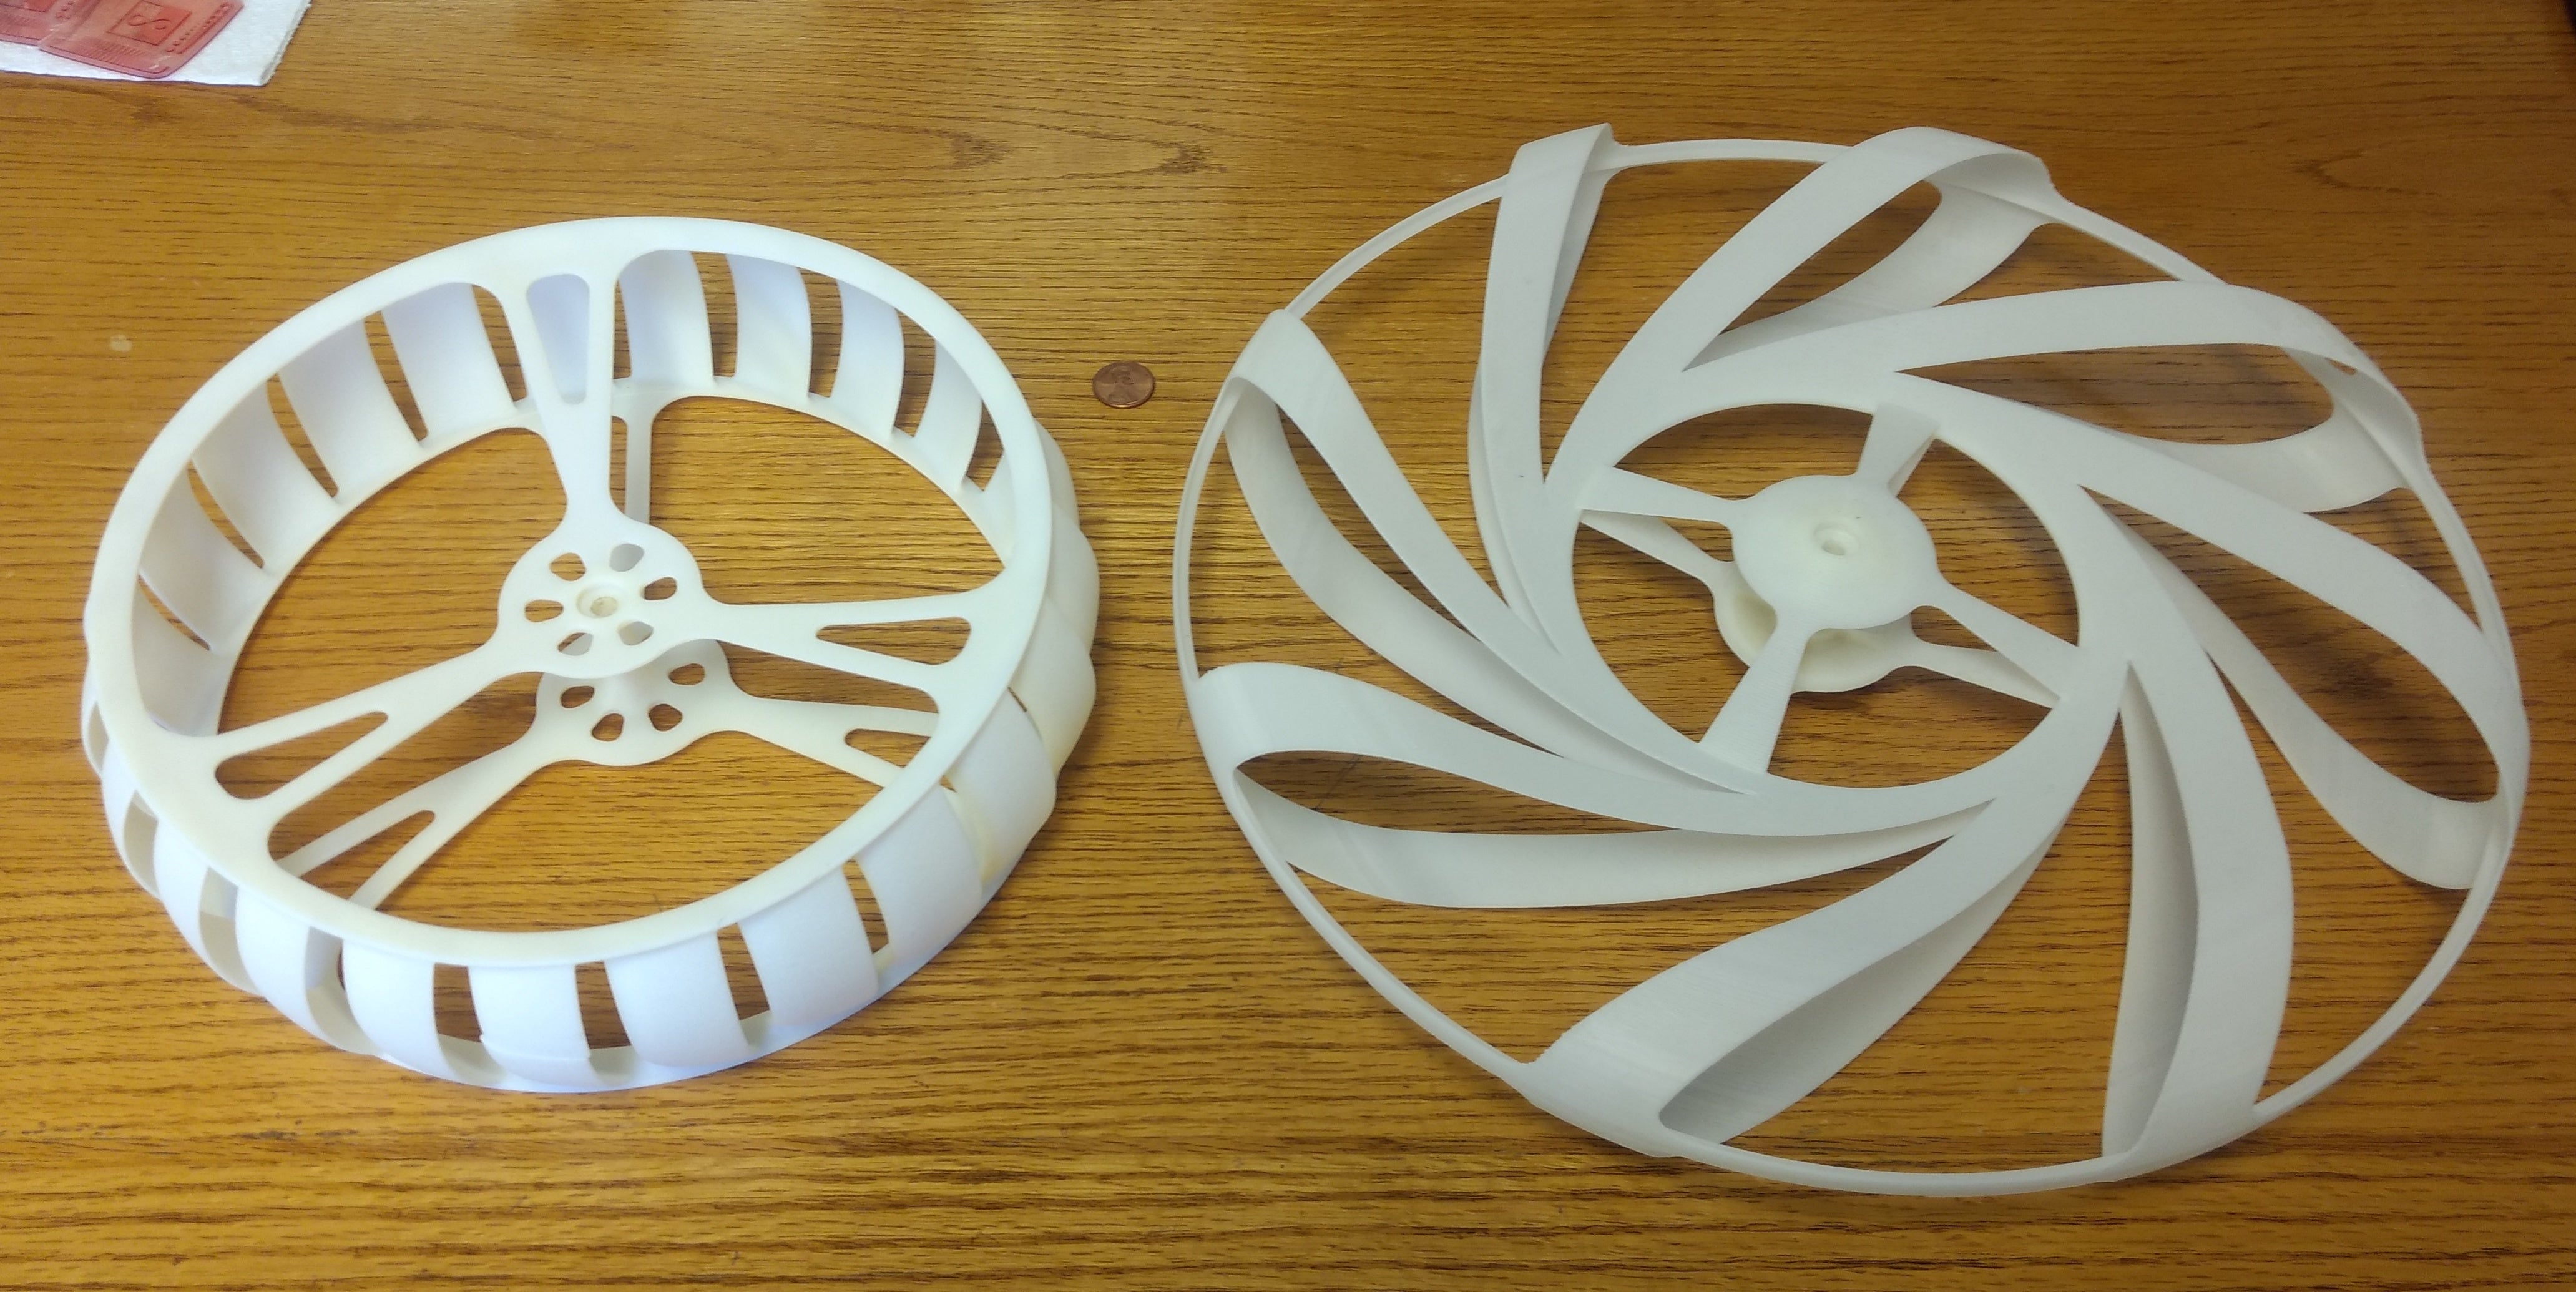 3D printed wind turbine prototype